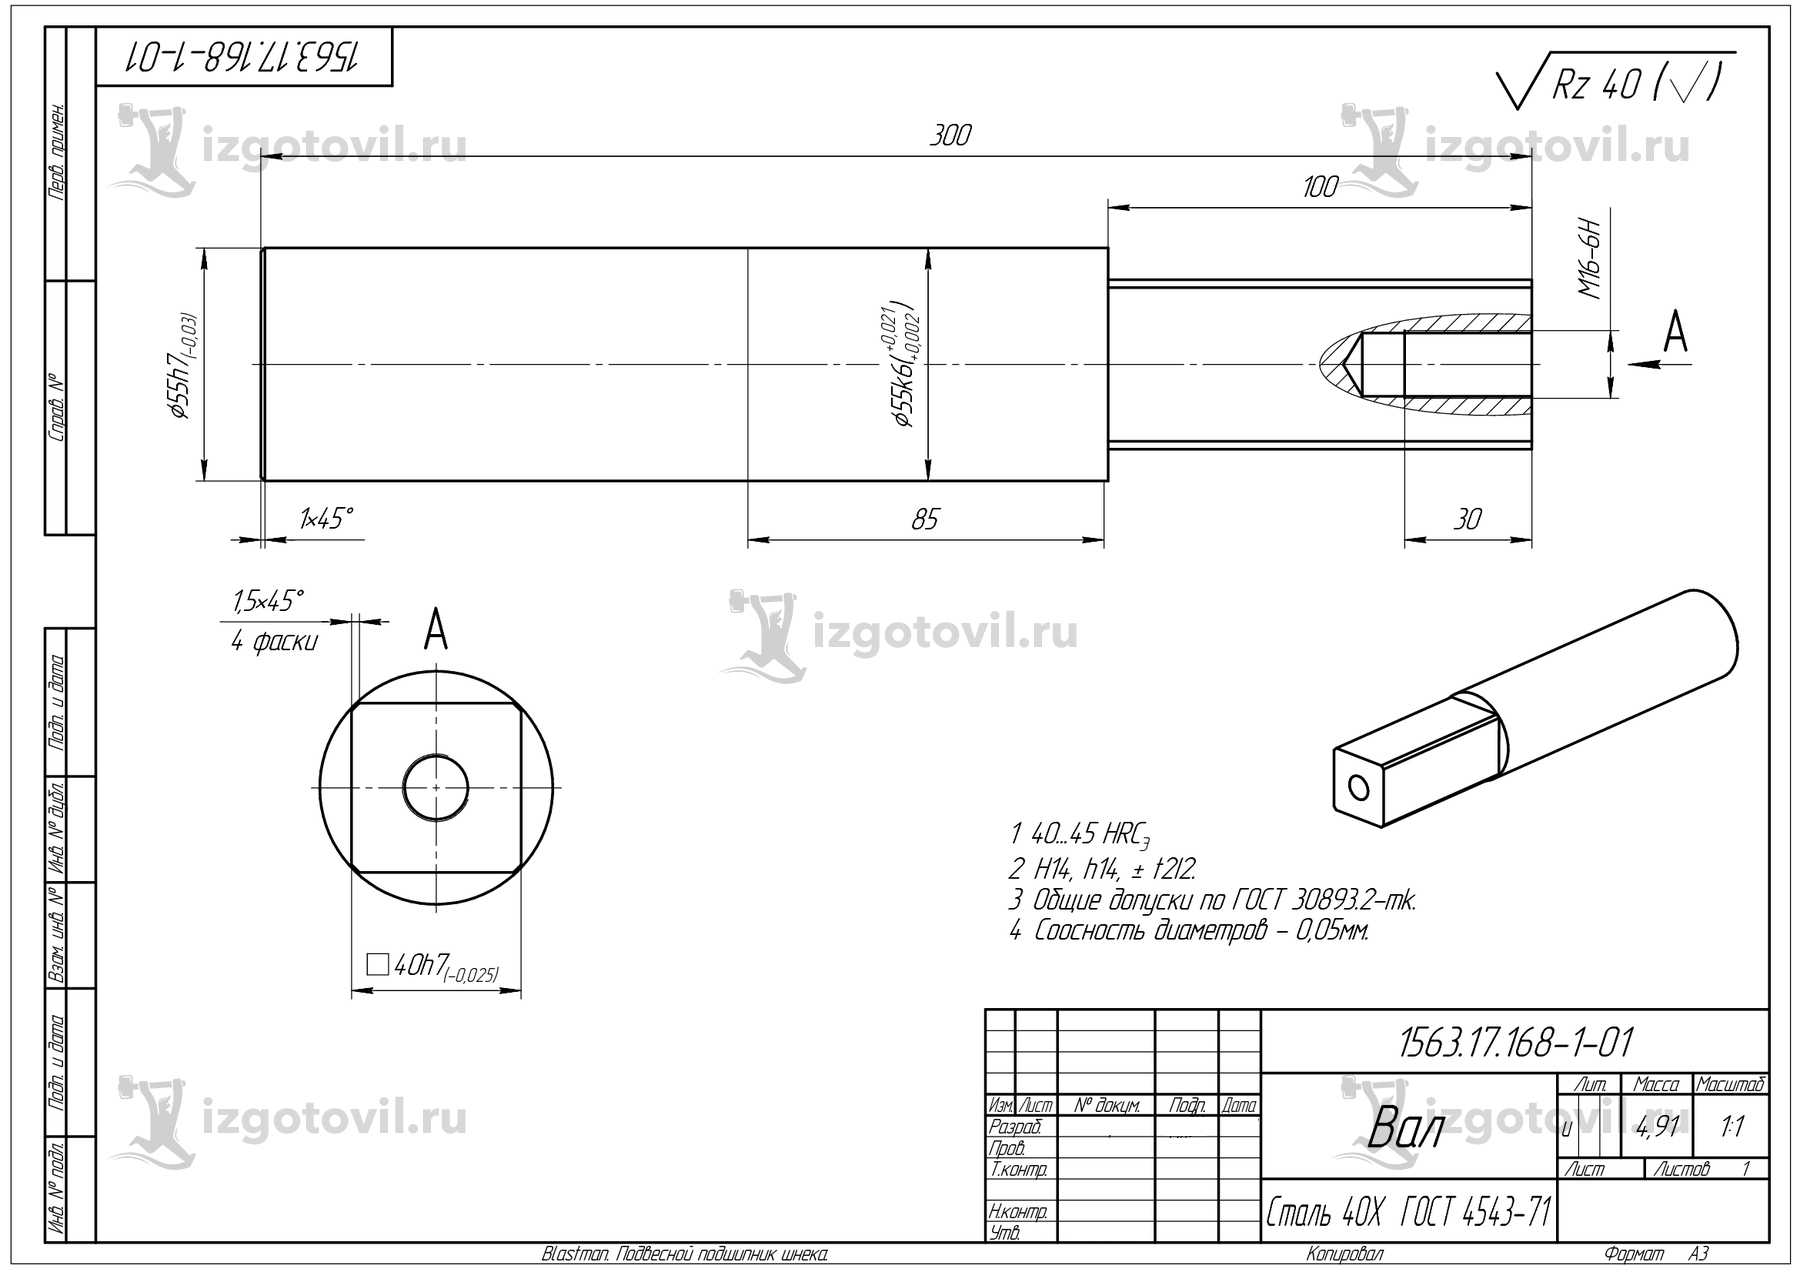 Изготовление деталей оборудования: подвесной подшипник